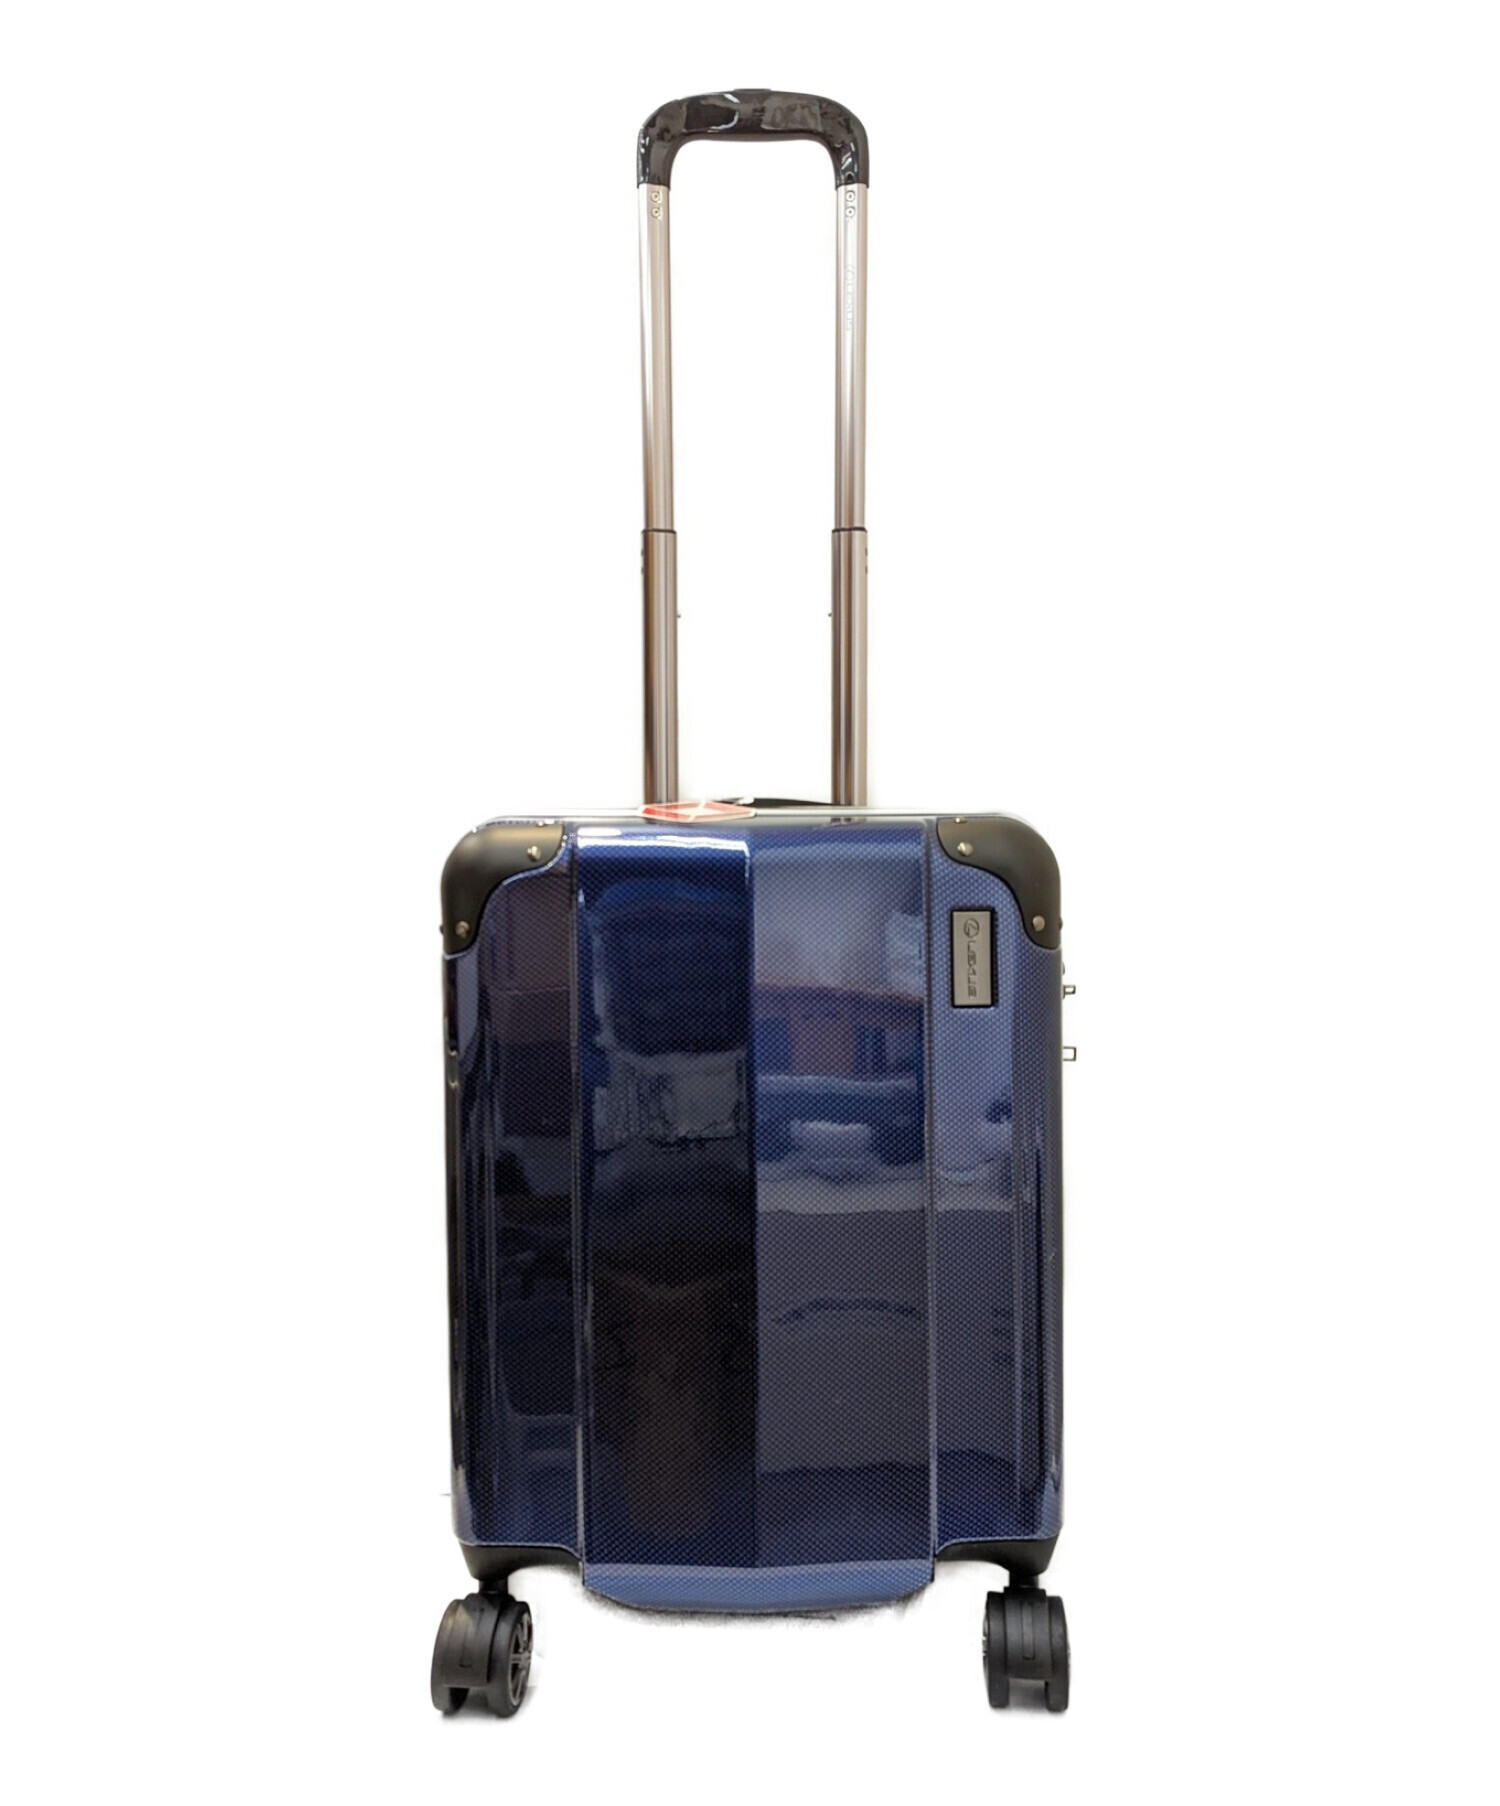 レクサス トロリーバッグ スーツケース ビジネス 旅行用 LEXUS - 旅行 